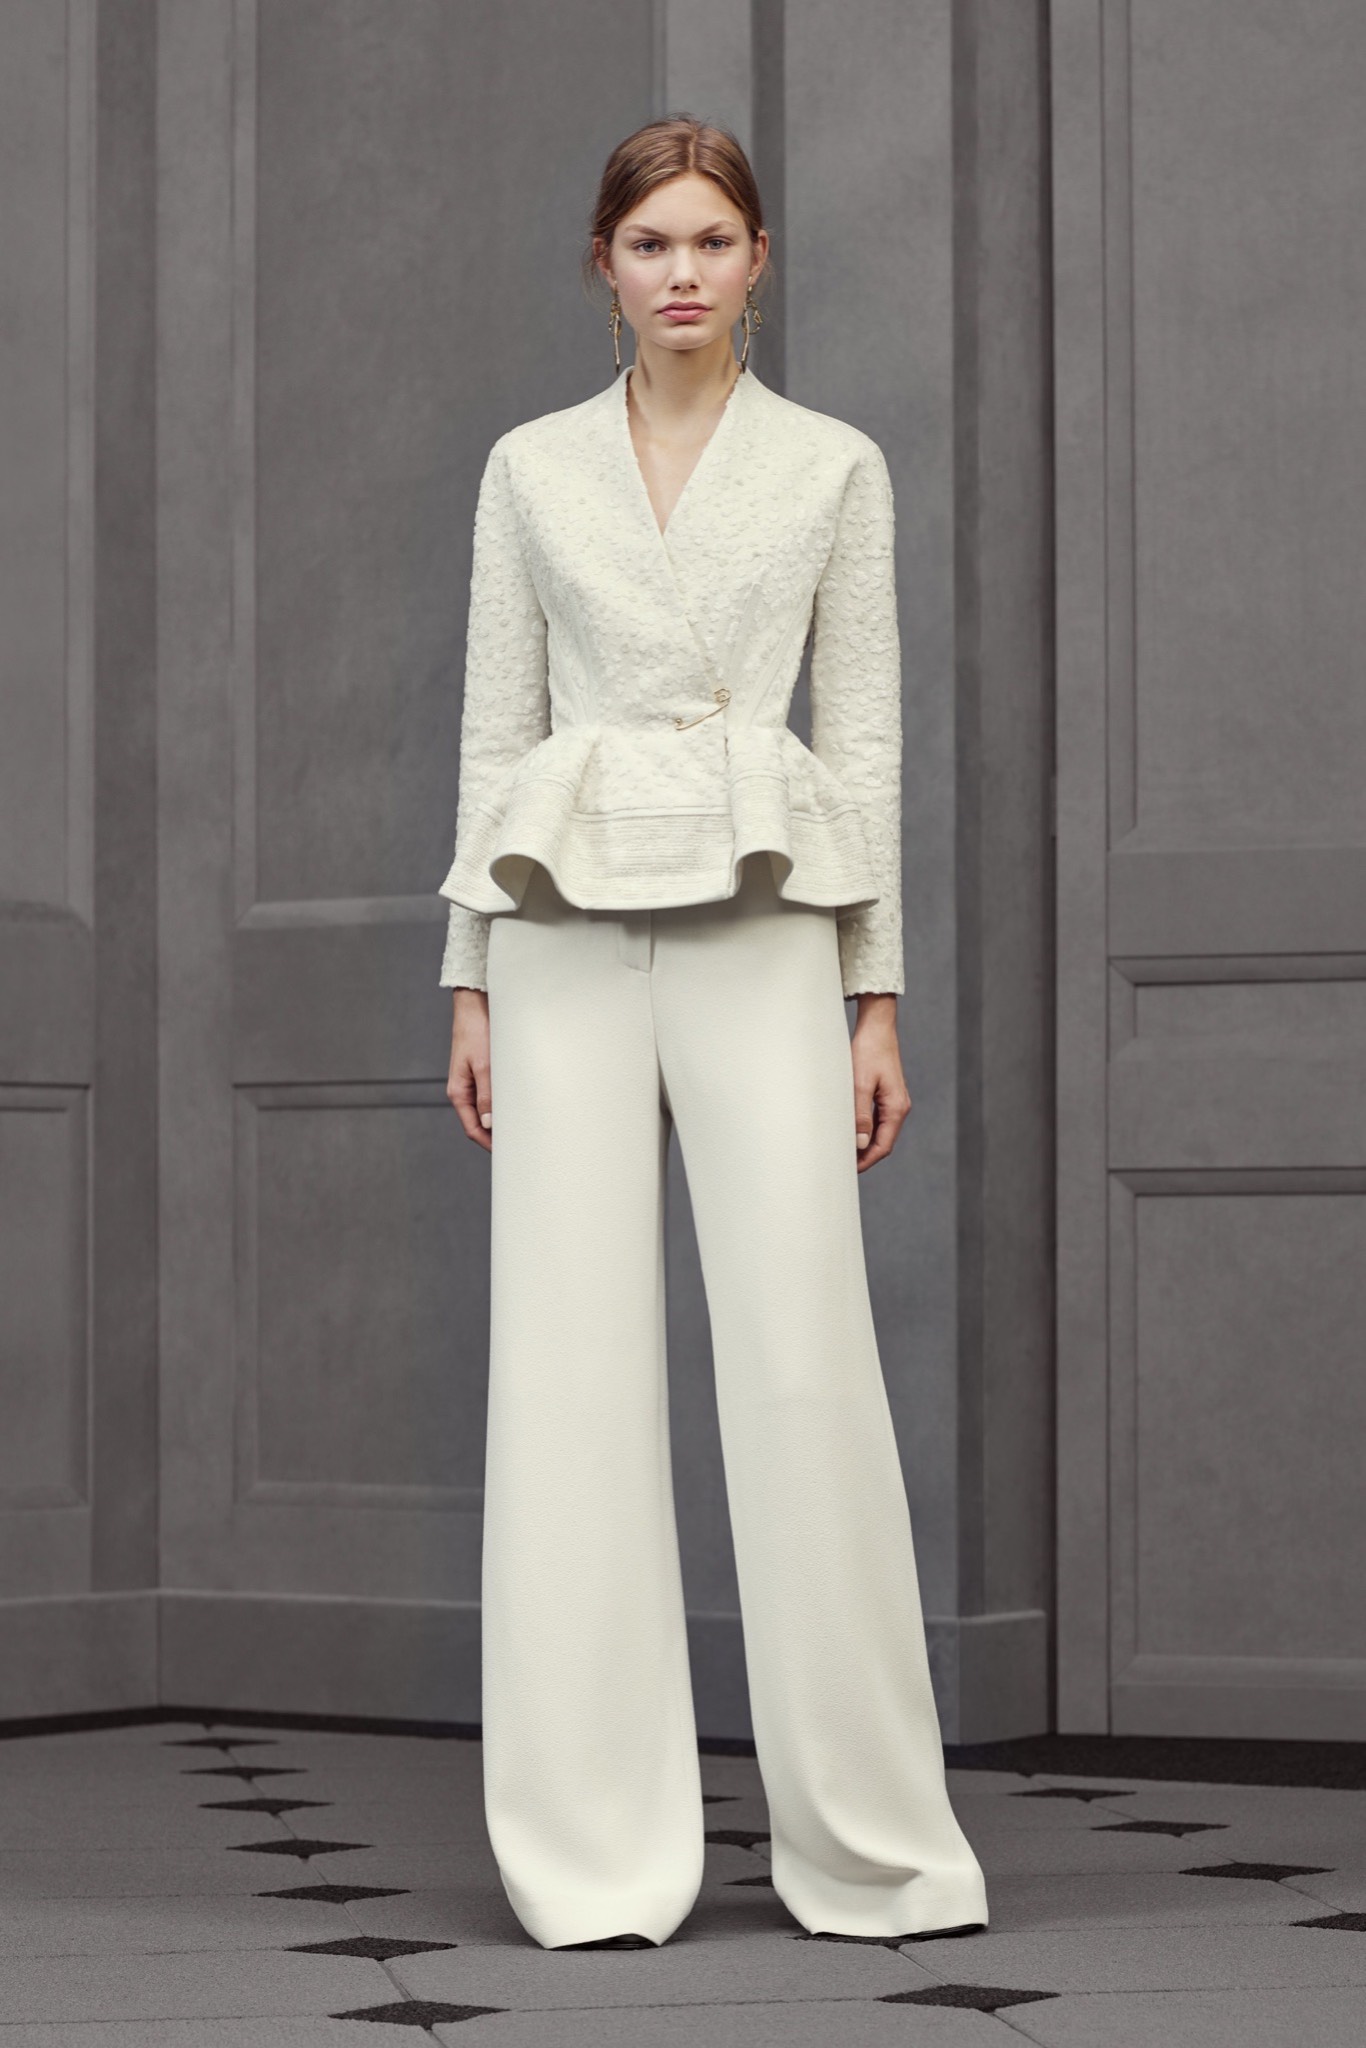 Balenciaga Spring 2016 Ready-to-Wear Collection